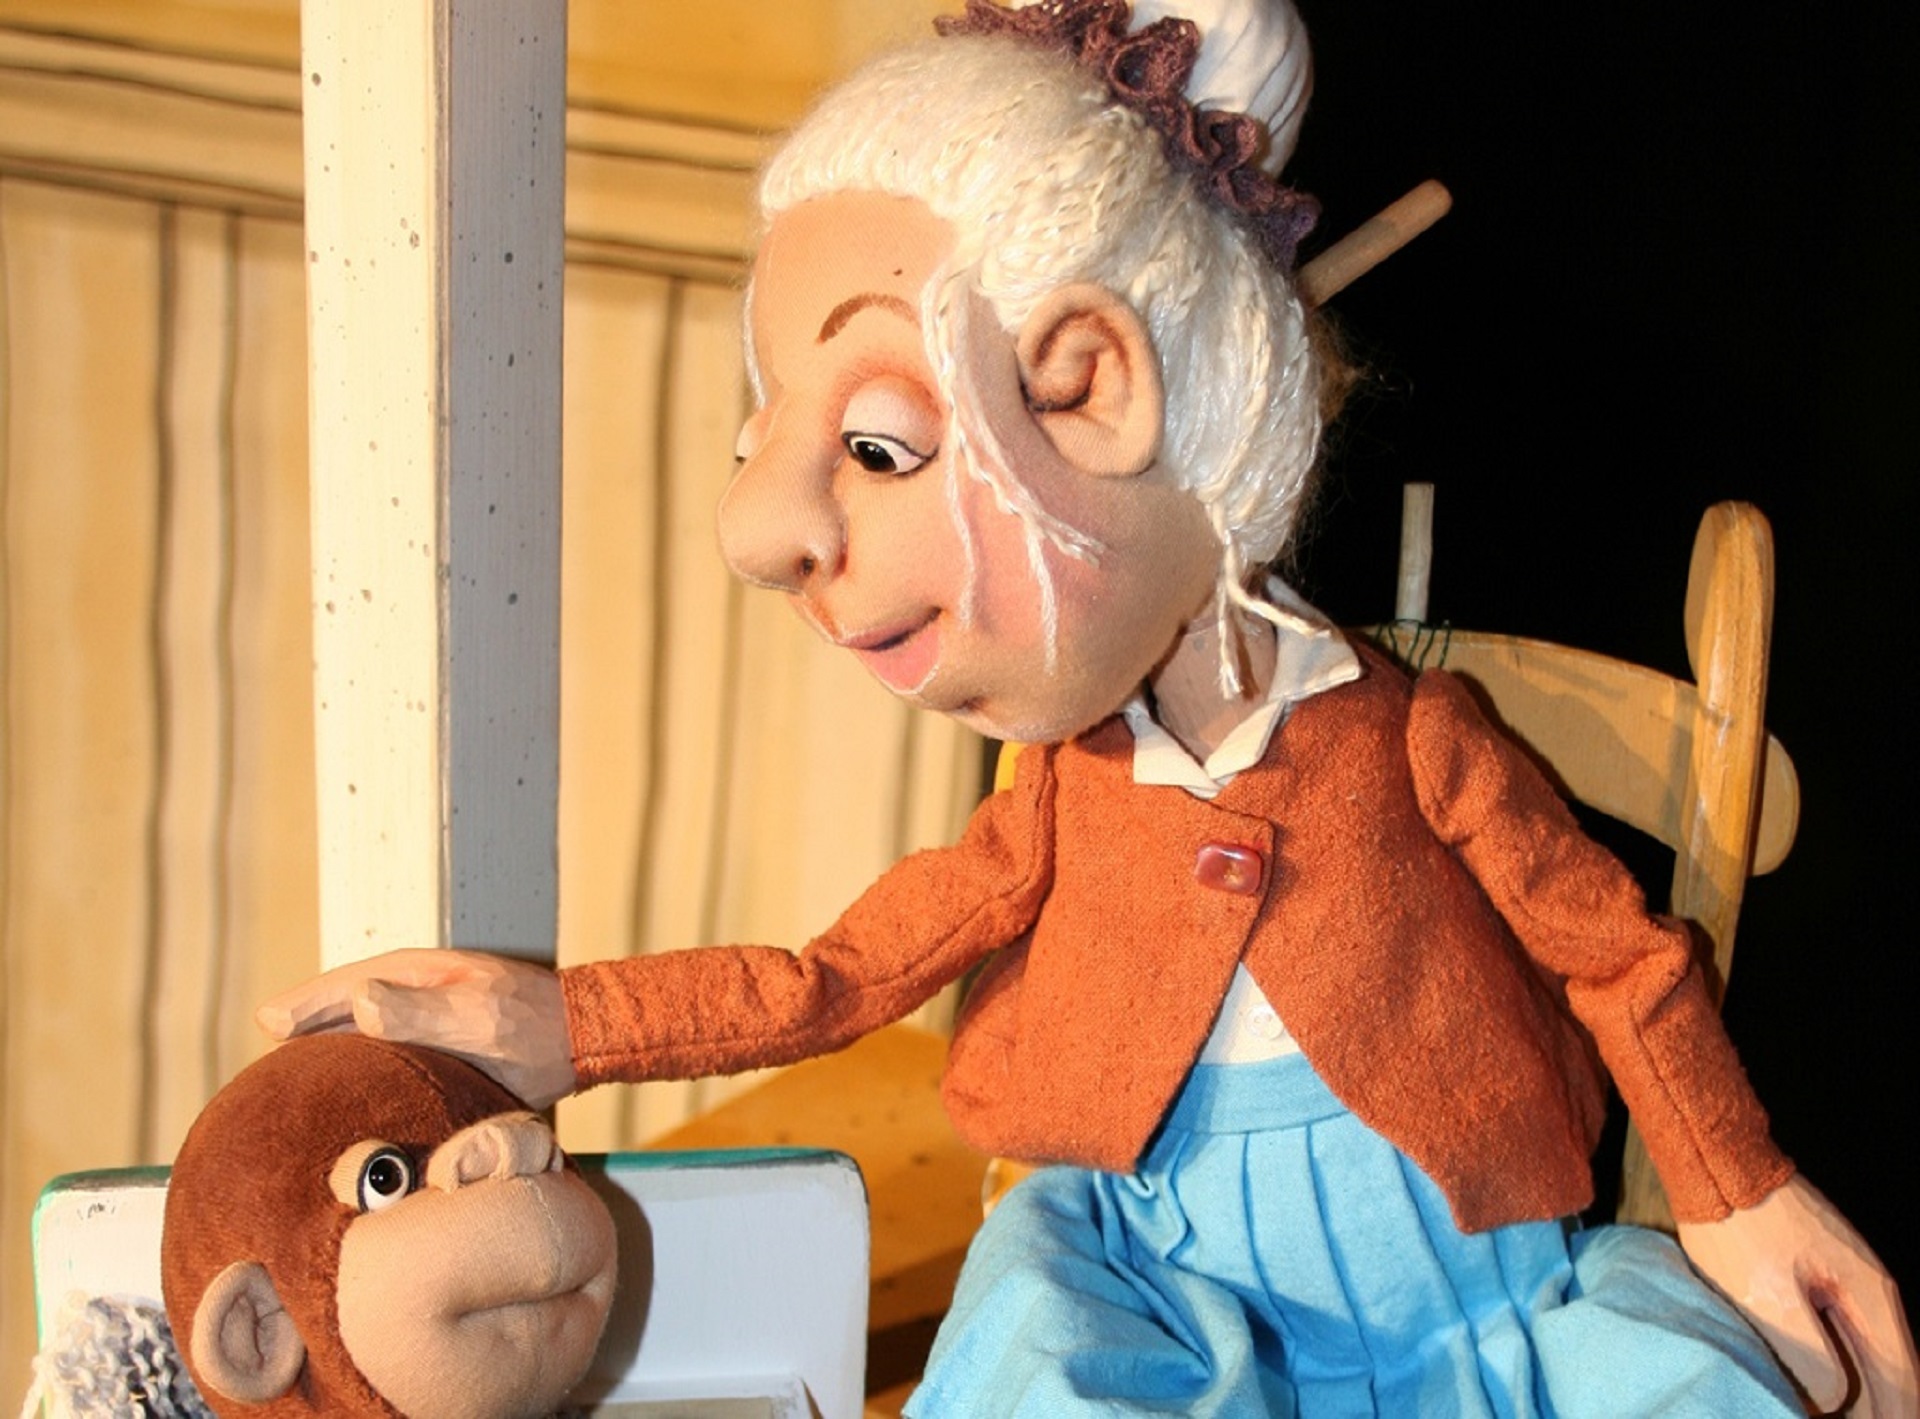 Im Fokus steht die Puppe "Oma Adele". Sie trägt weißes, in einem Dutt zusammengebundenes Haar, eine orangene Weste mit weißen Kragen und einen hellblauen Rock. Sie streichelt einen kleinen, brauen Stoff-Affen. Oma Adele sitzt auf einem brauen Holzstuhl, während der Affe aus einen kleinen Holzkiste ragt.